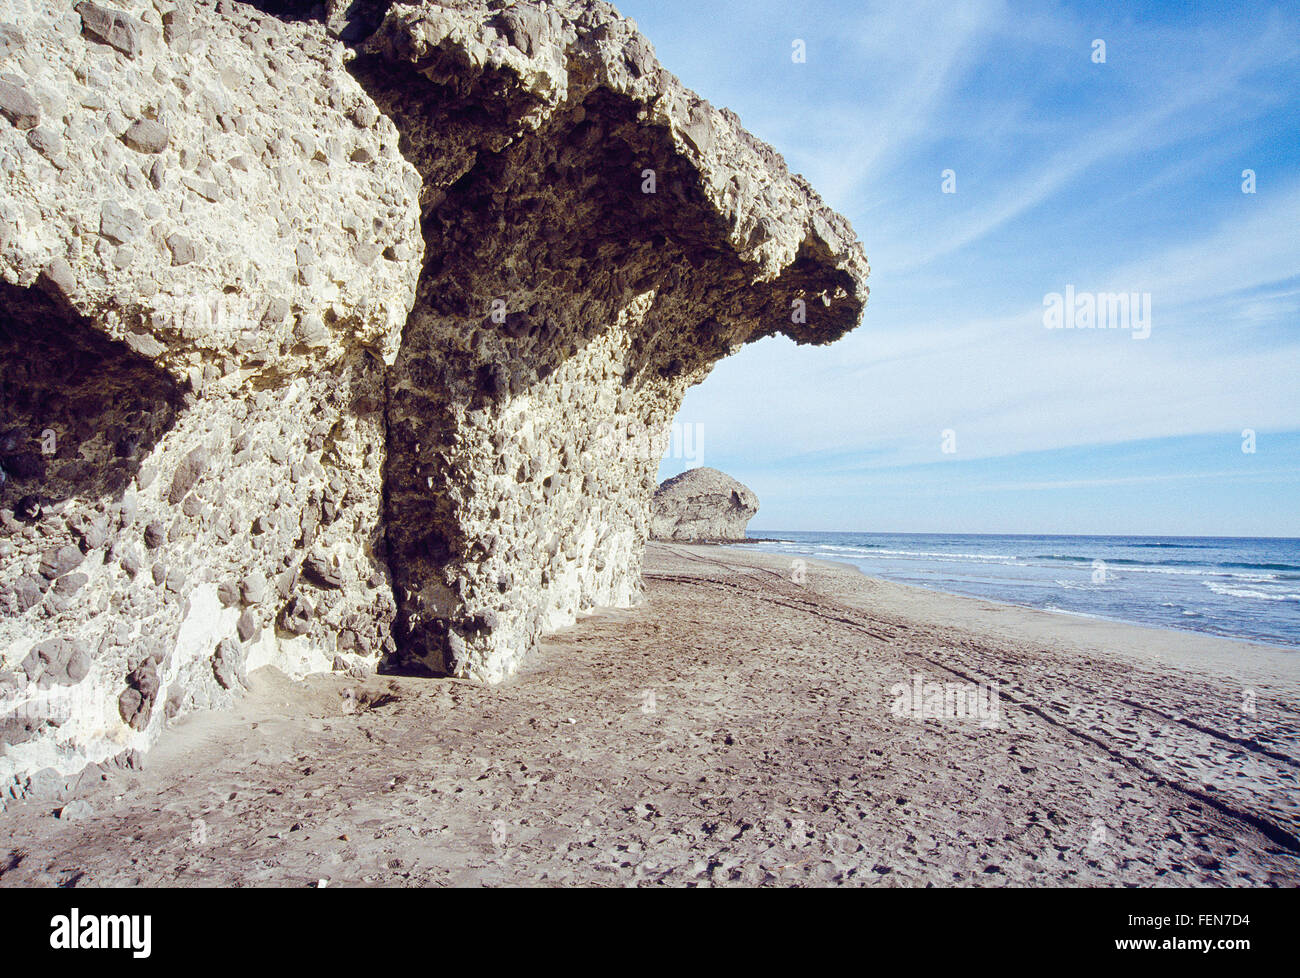 Monsul beach. Cabo de Gata Nature Reserve, Almeria province, Andalucia, Spain. Stock Photo